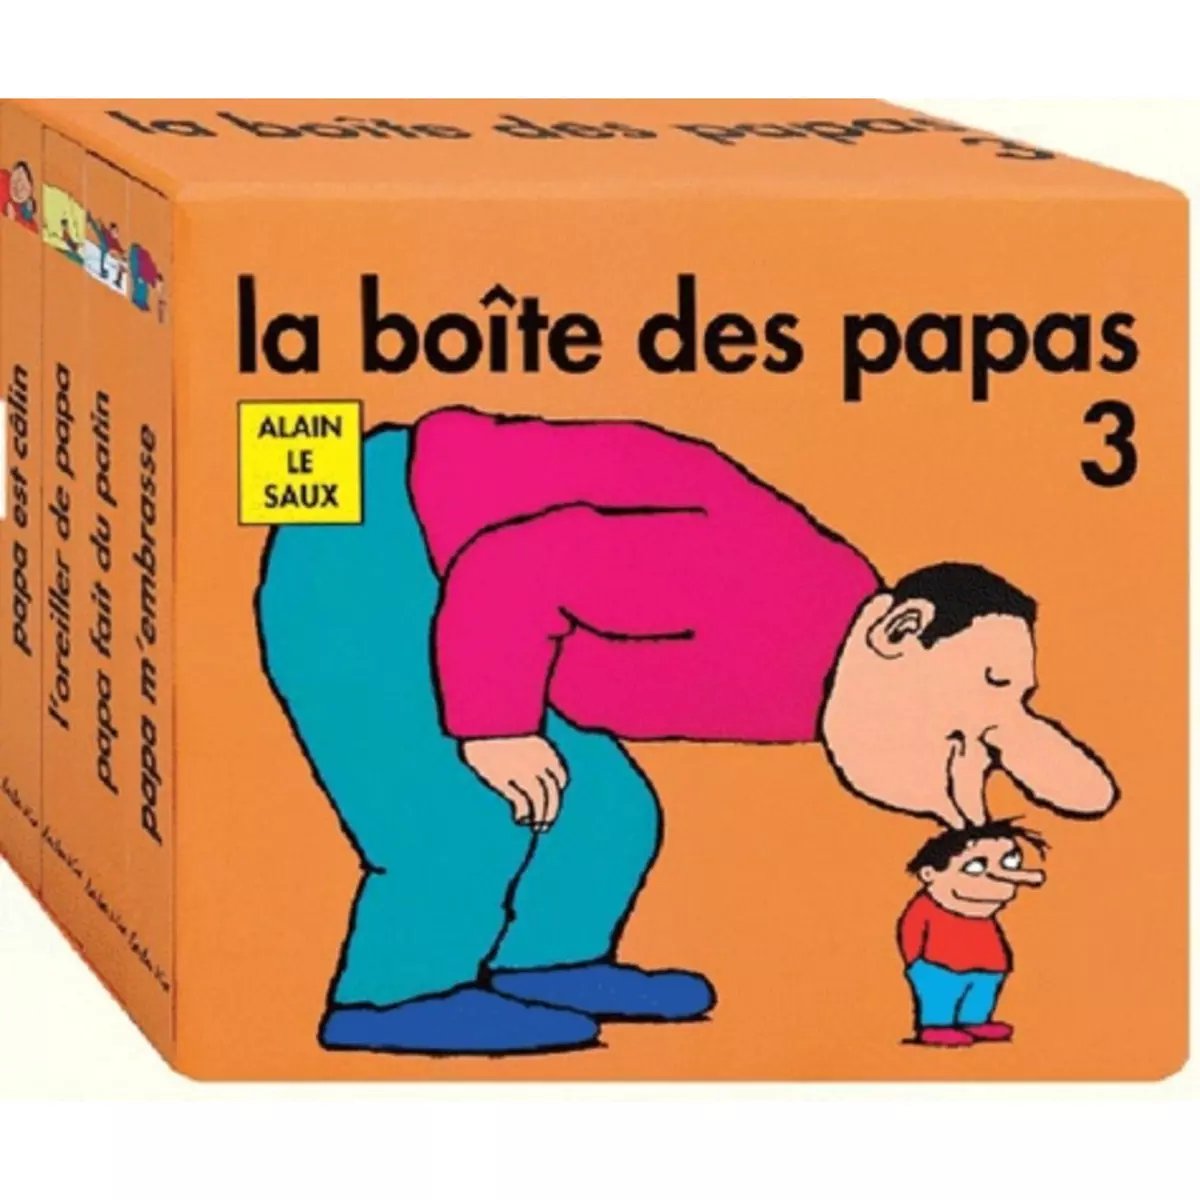  LA BOITE DES PAPAS 3, Le Saux Alain